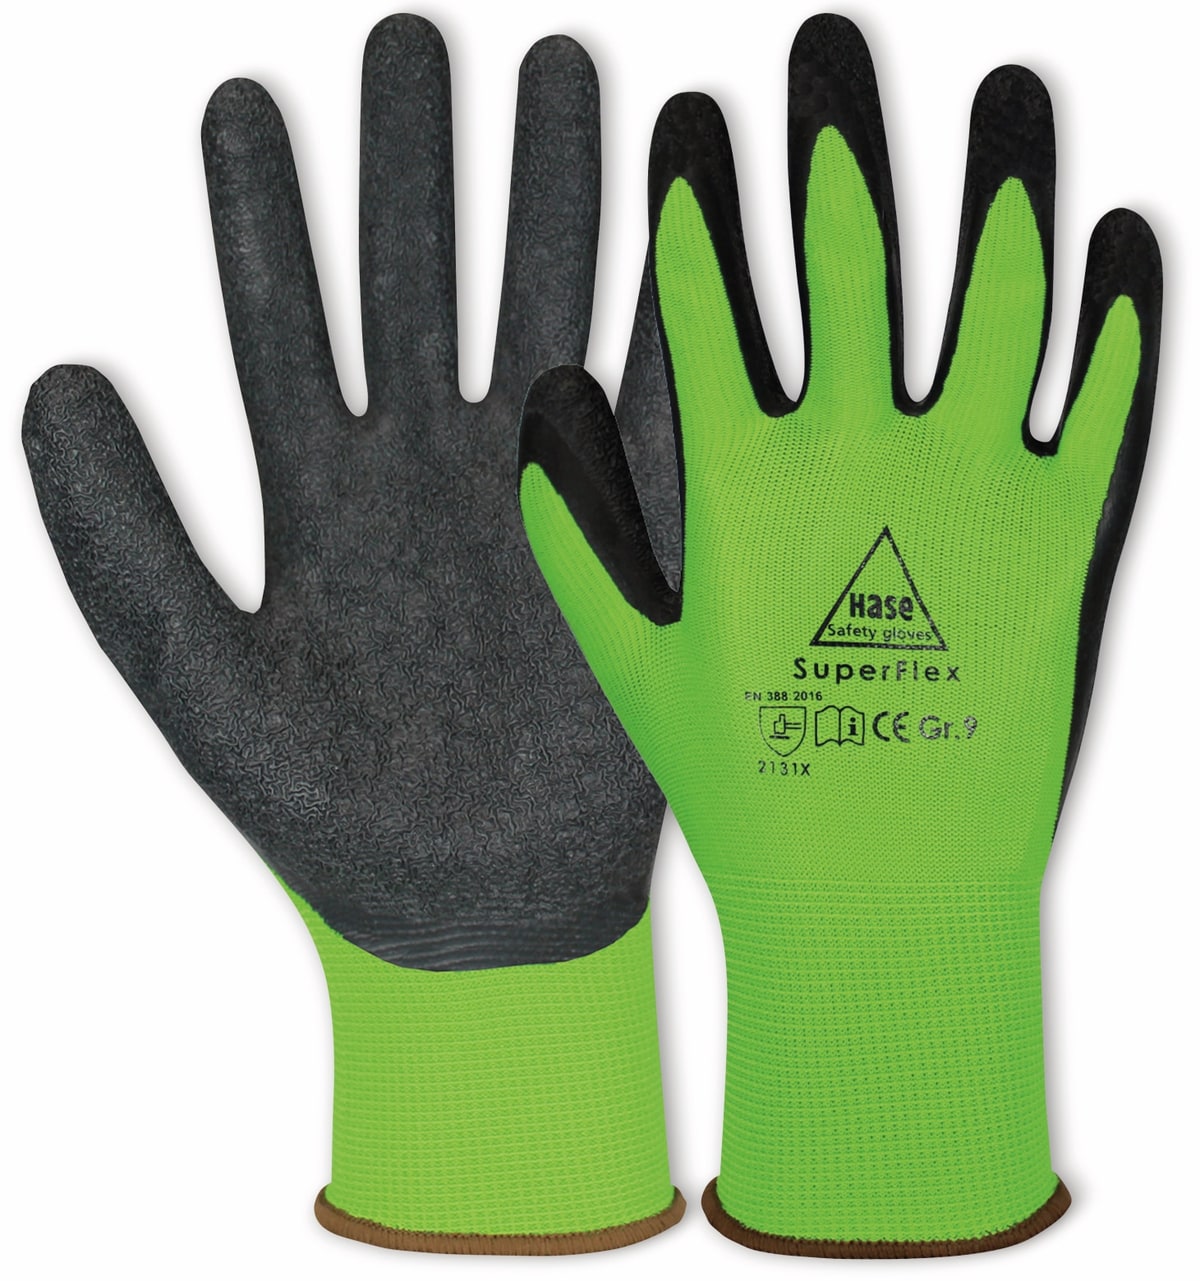 HASE SAFETY GLOVES Latex-Arbeitshandschuhe Superflex, EN 388, EN 420, Größe 7, grün/schwarz von Hase Safety gloves